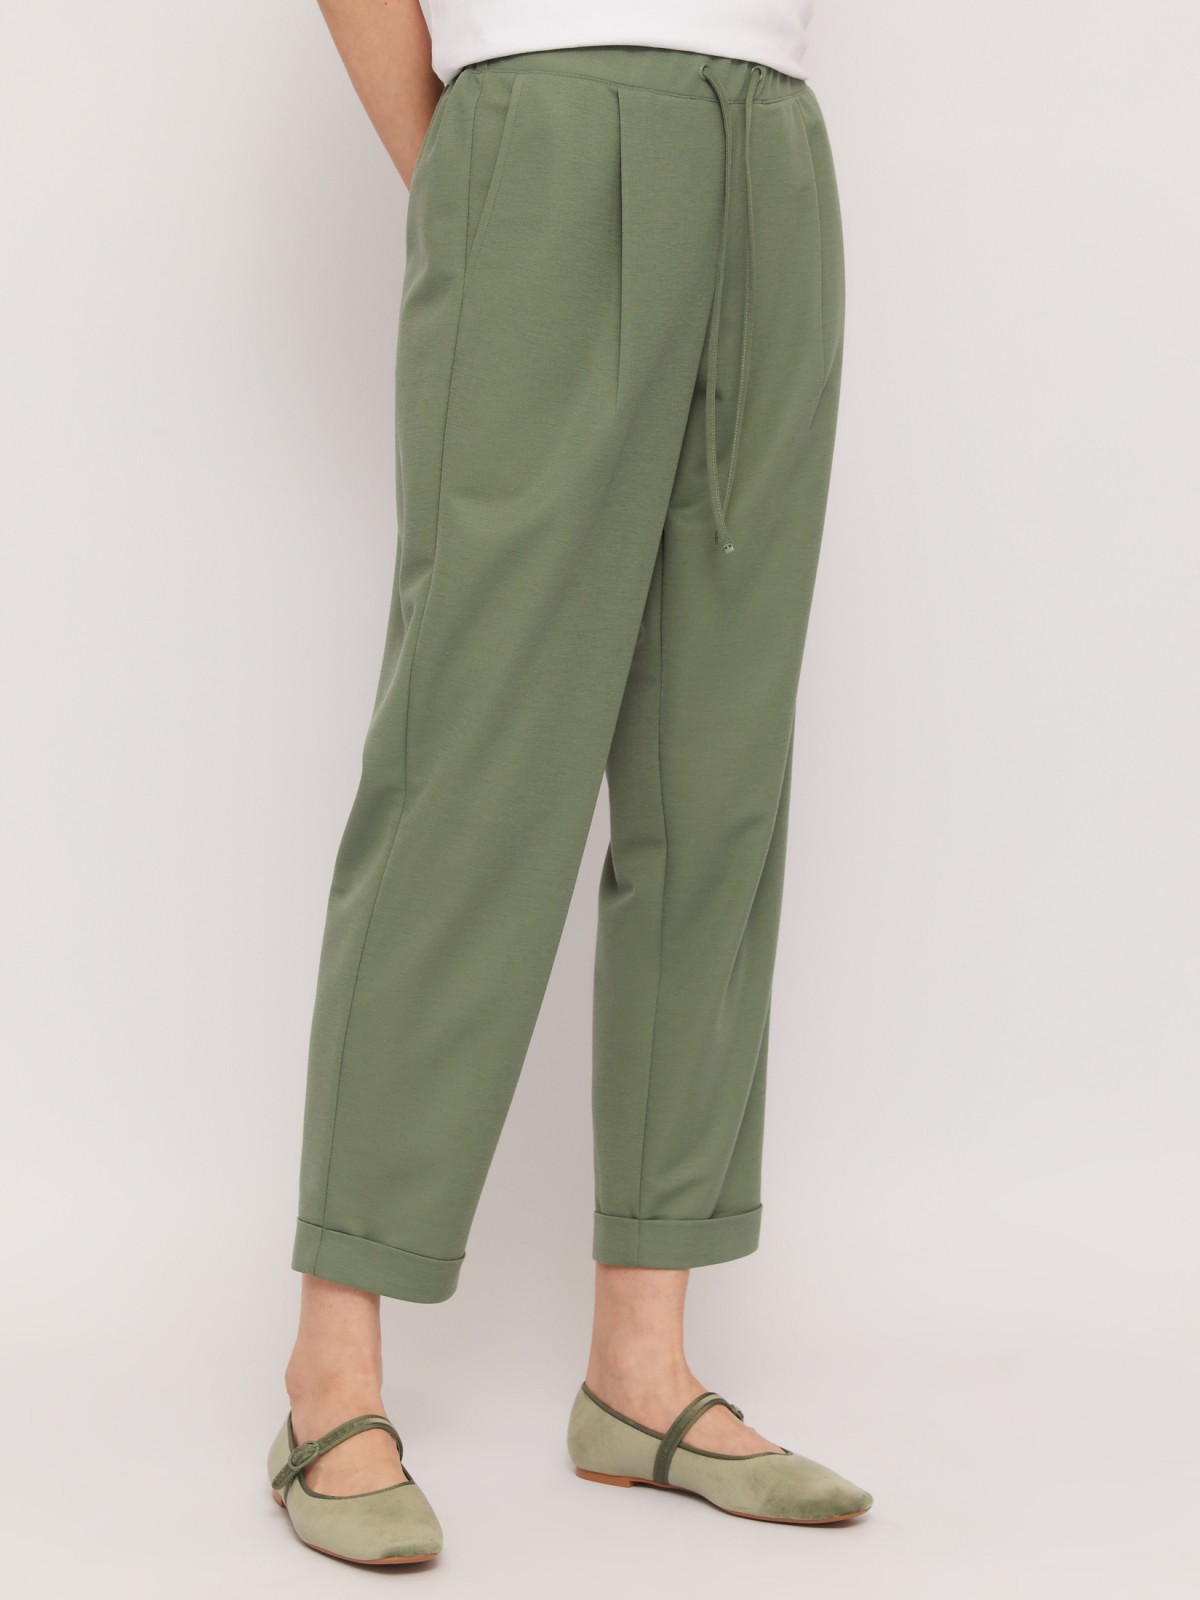 Трикотажные брюки-джоггеры на резинке zolla 02424739Y012, цвет темно-зеленый, размер XS - фото 2